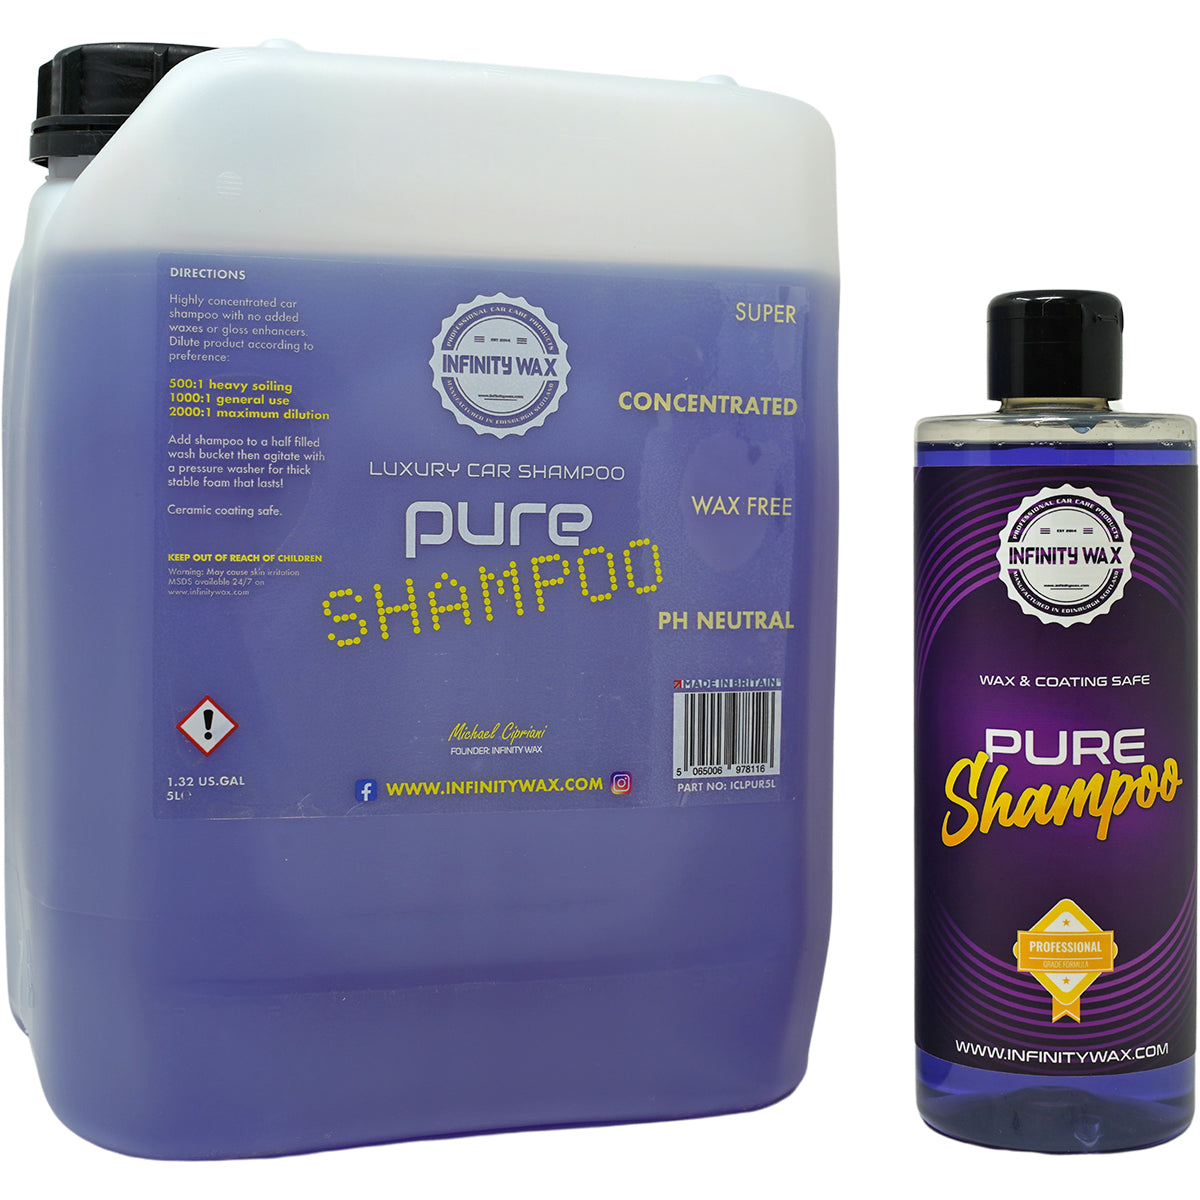 Infinity Wax Pure Shampoo